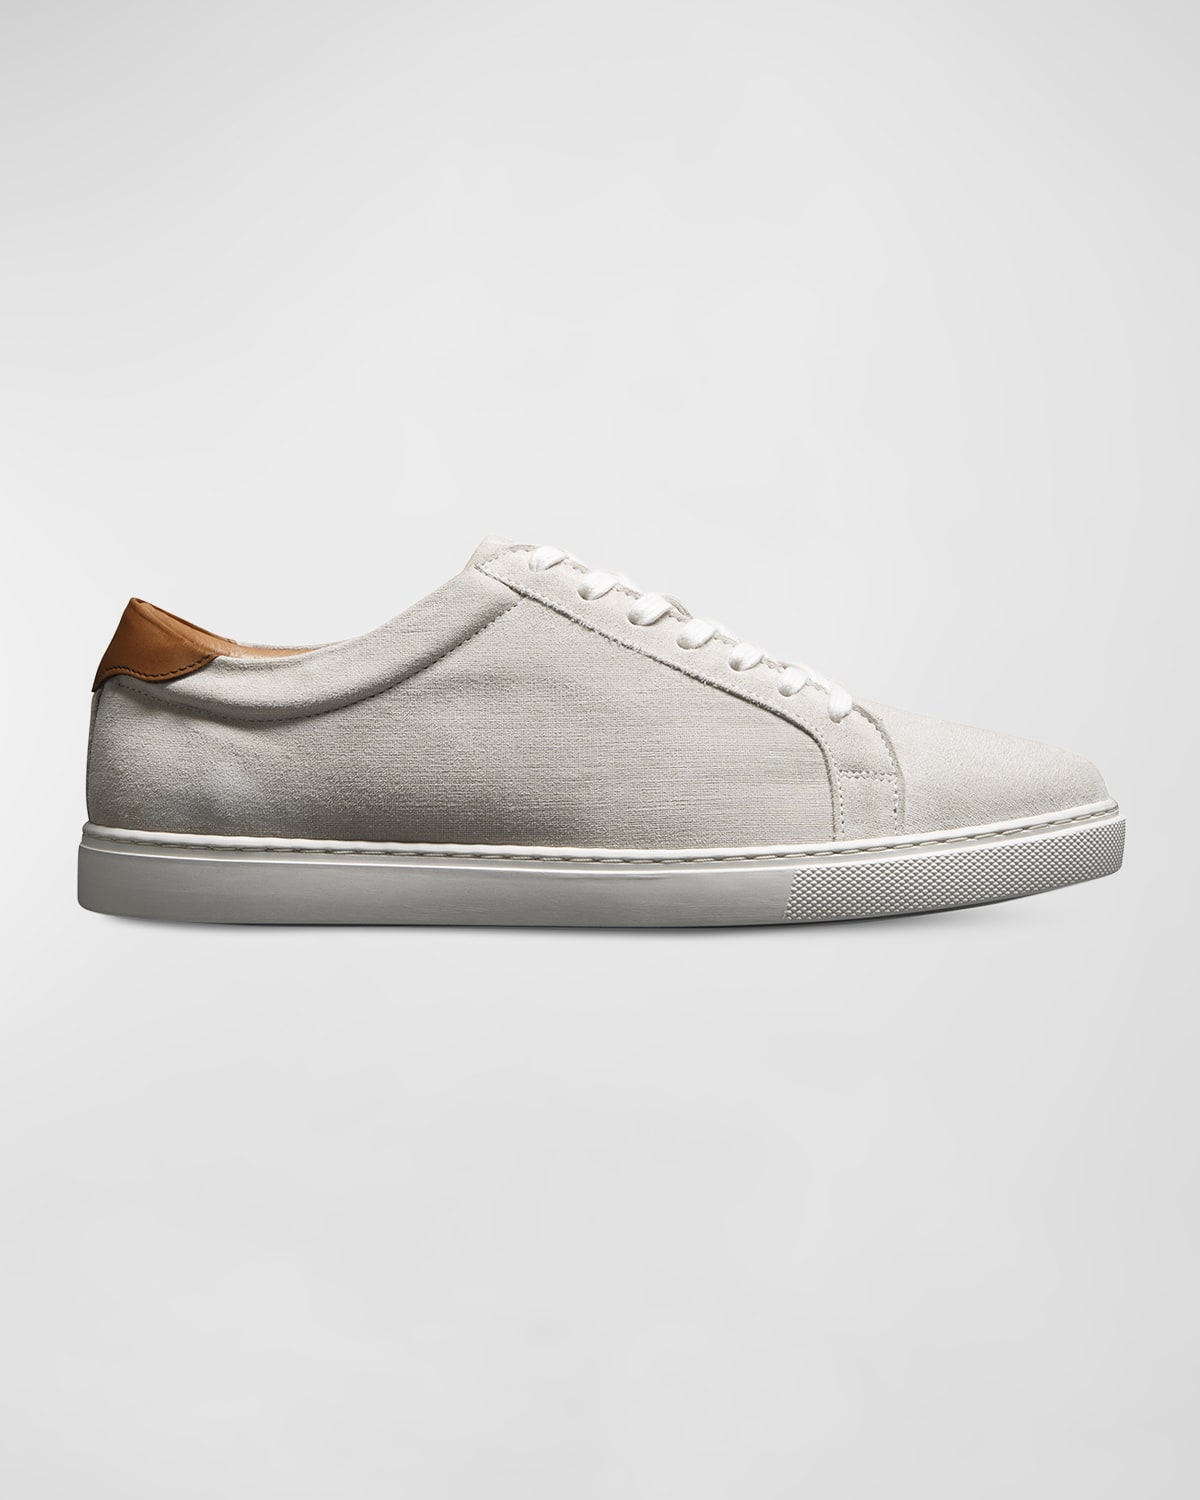 Shop Allen Edmonds Men's Courtside Suede Low-top Sneakers In Light Grey Suede